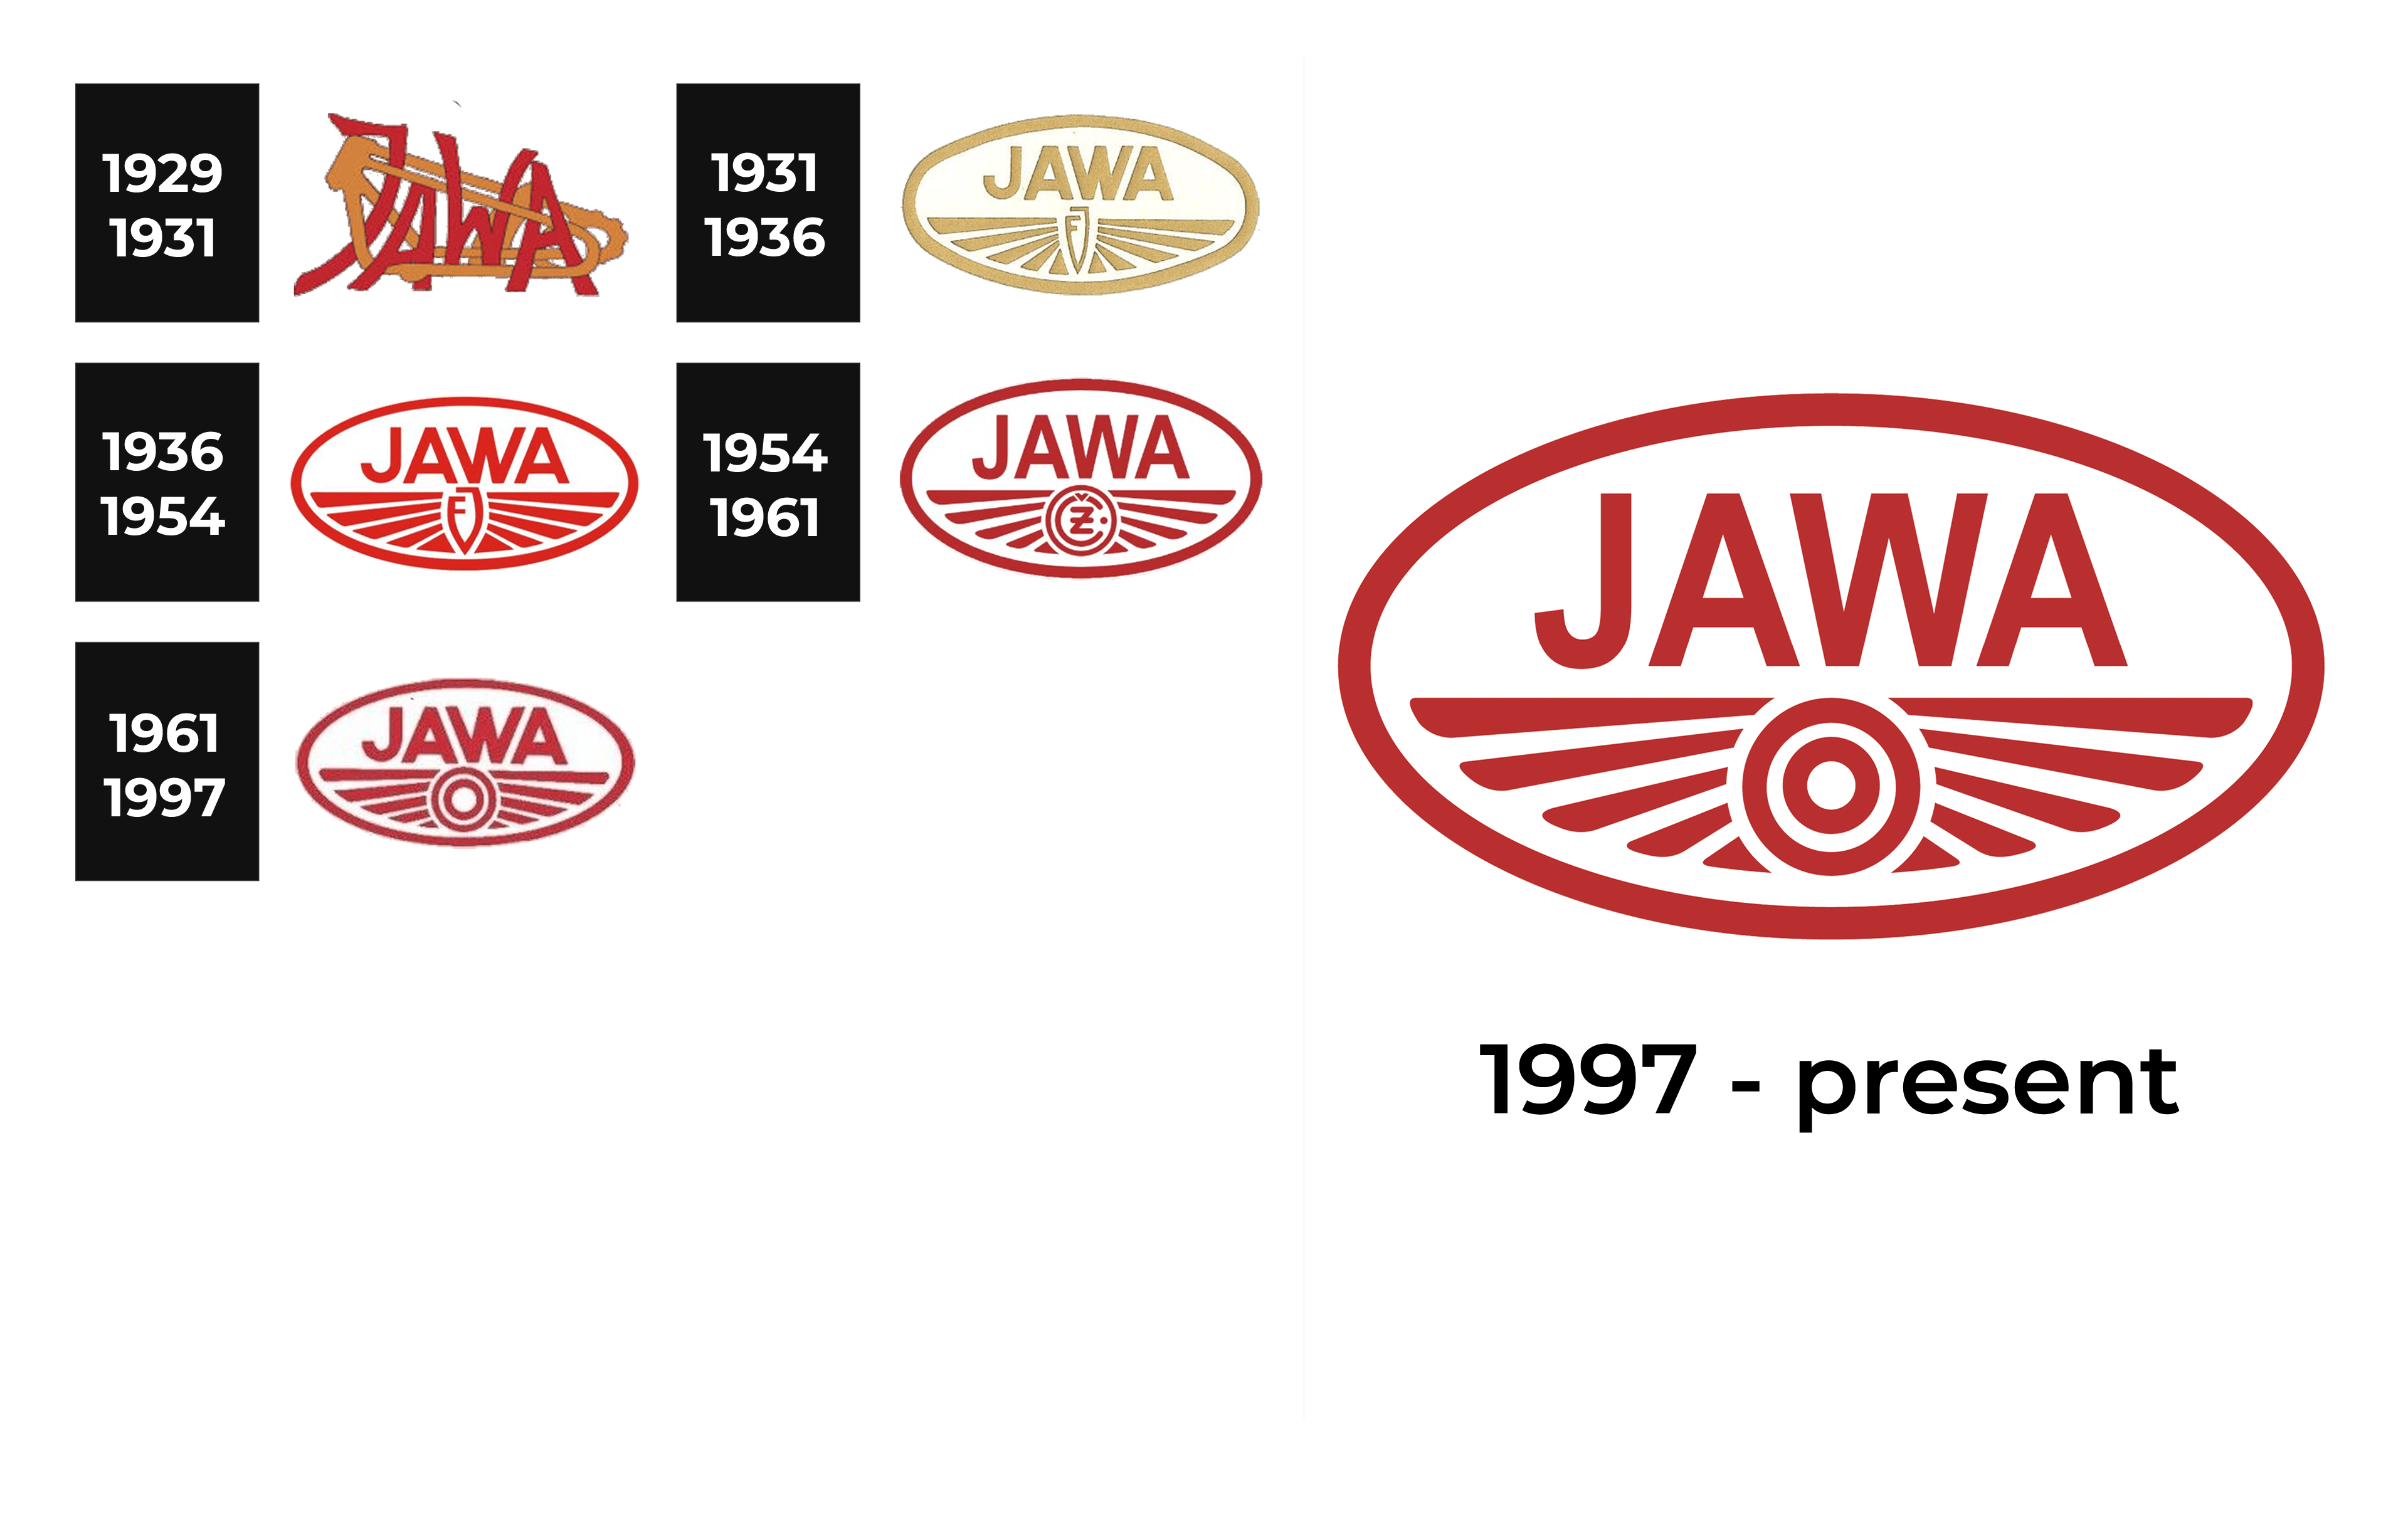 Aksen khas Jawa hiasi logo ASEAN Para Games 2022 - ANTARA News